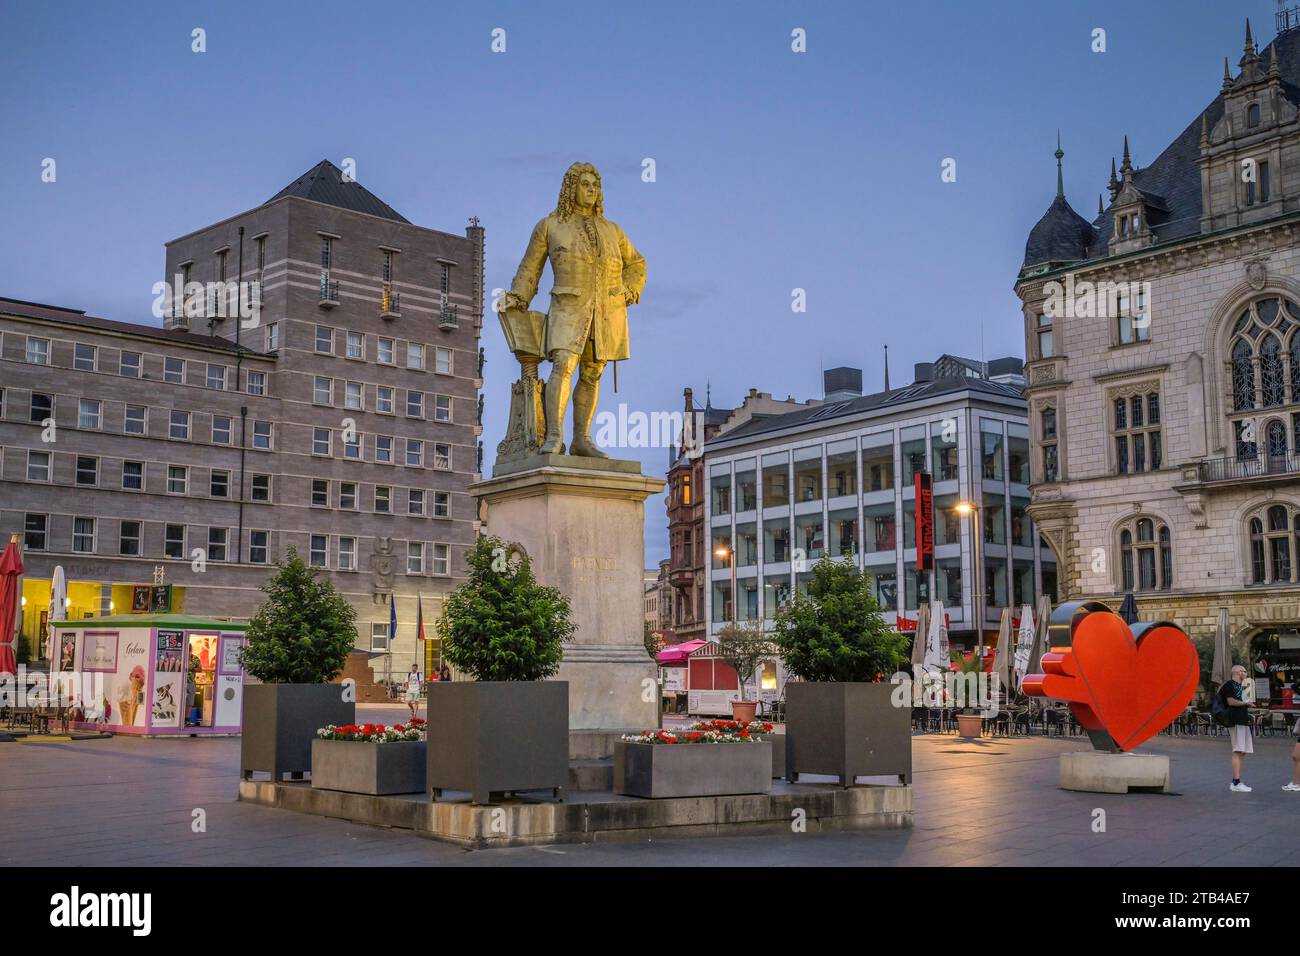 Monument de Haendel, place du marché, Halle an der Saale, Saxe-Anhalt, Allemagne Banque D'Images